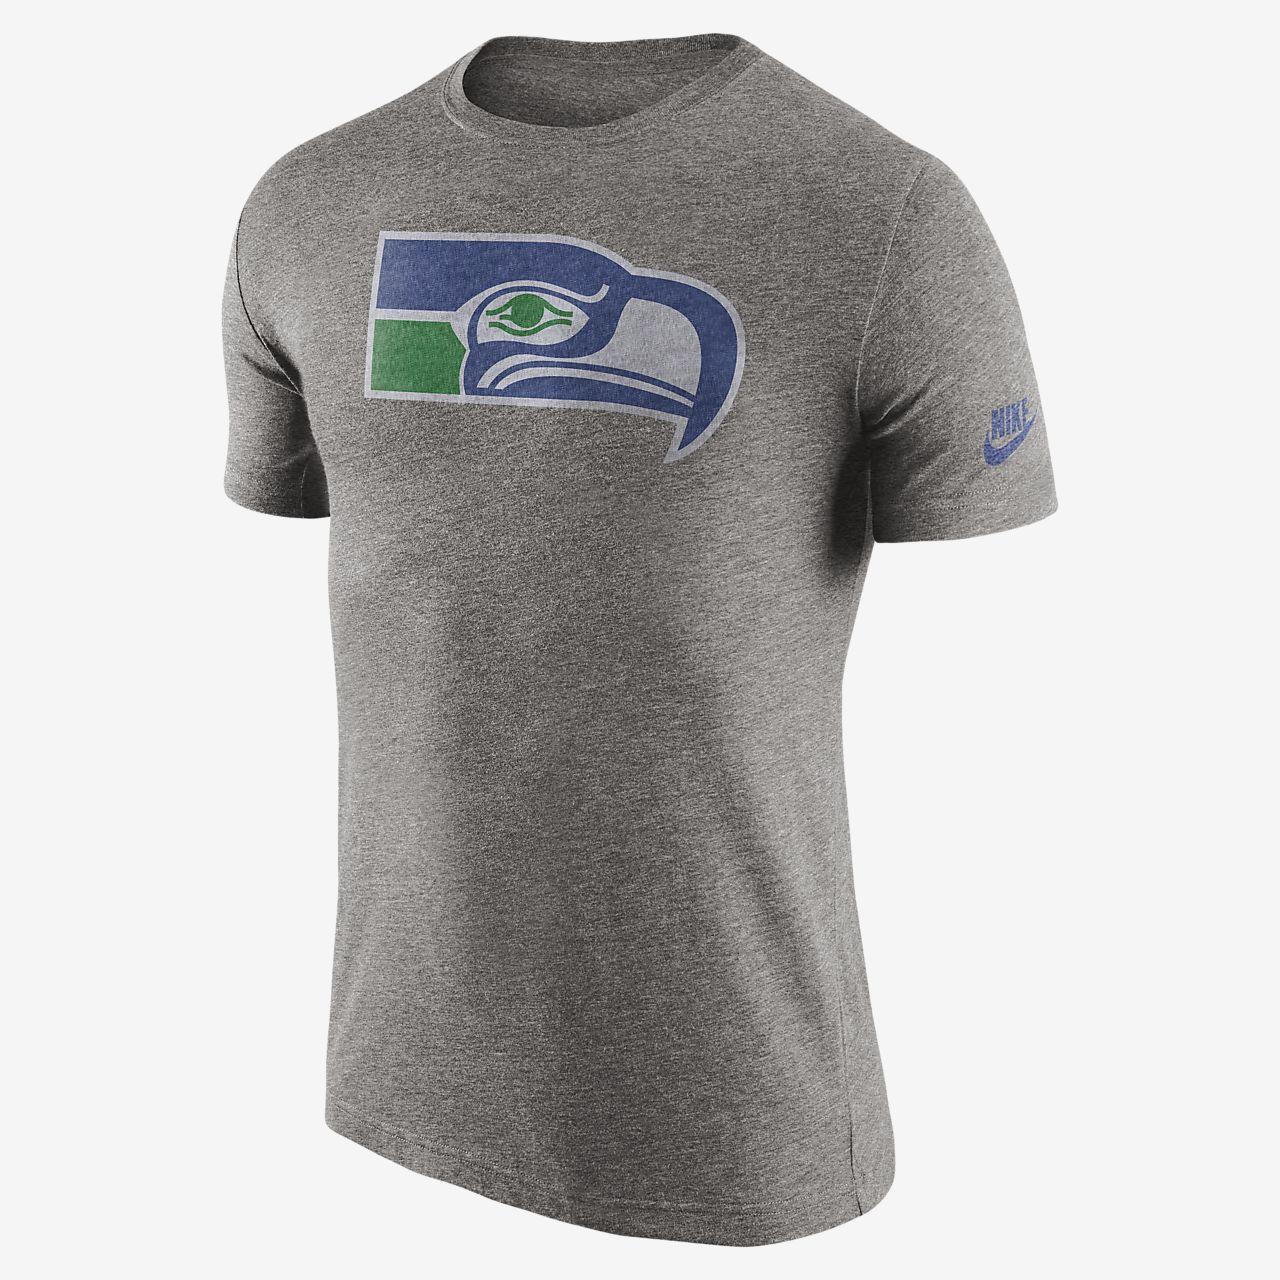 NFL Seahawks Logo - Nike Historic Logo (NFL Seahawks) Men's T-Shirt. Nike.com